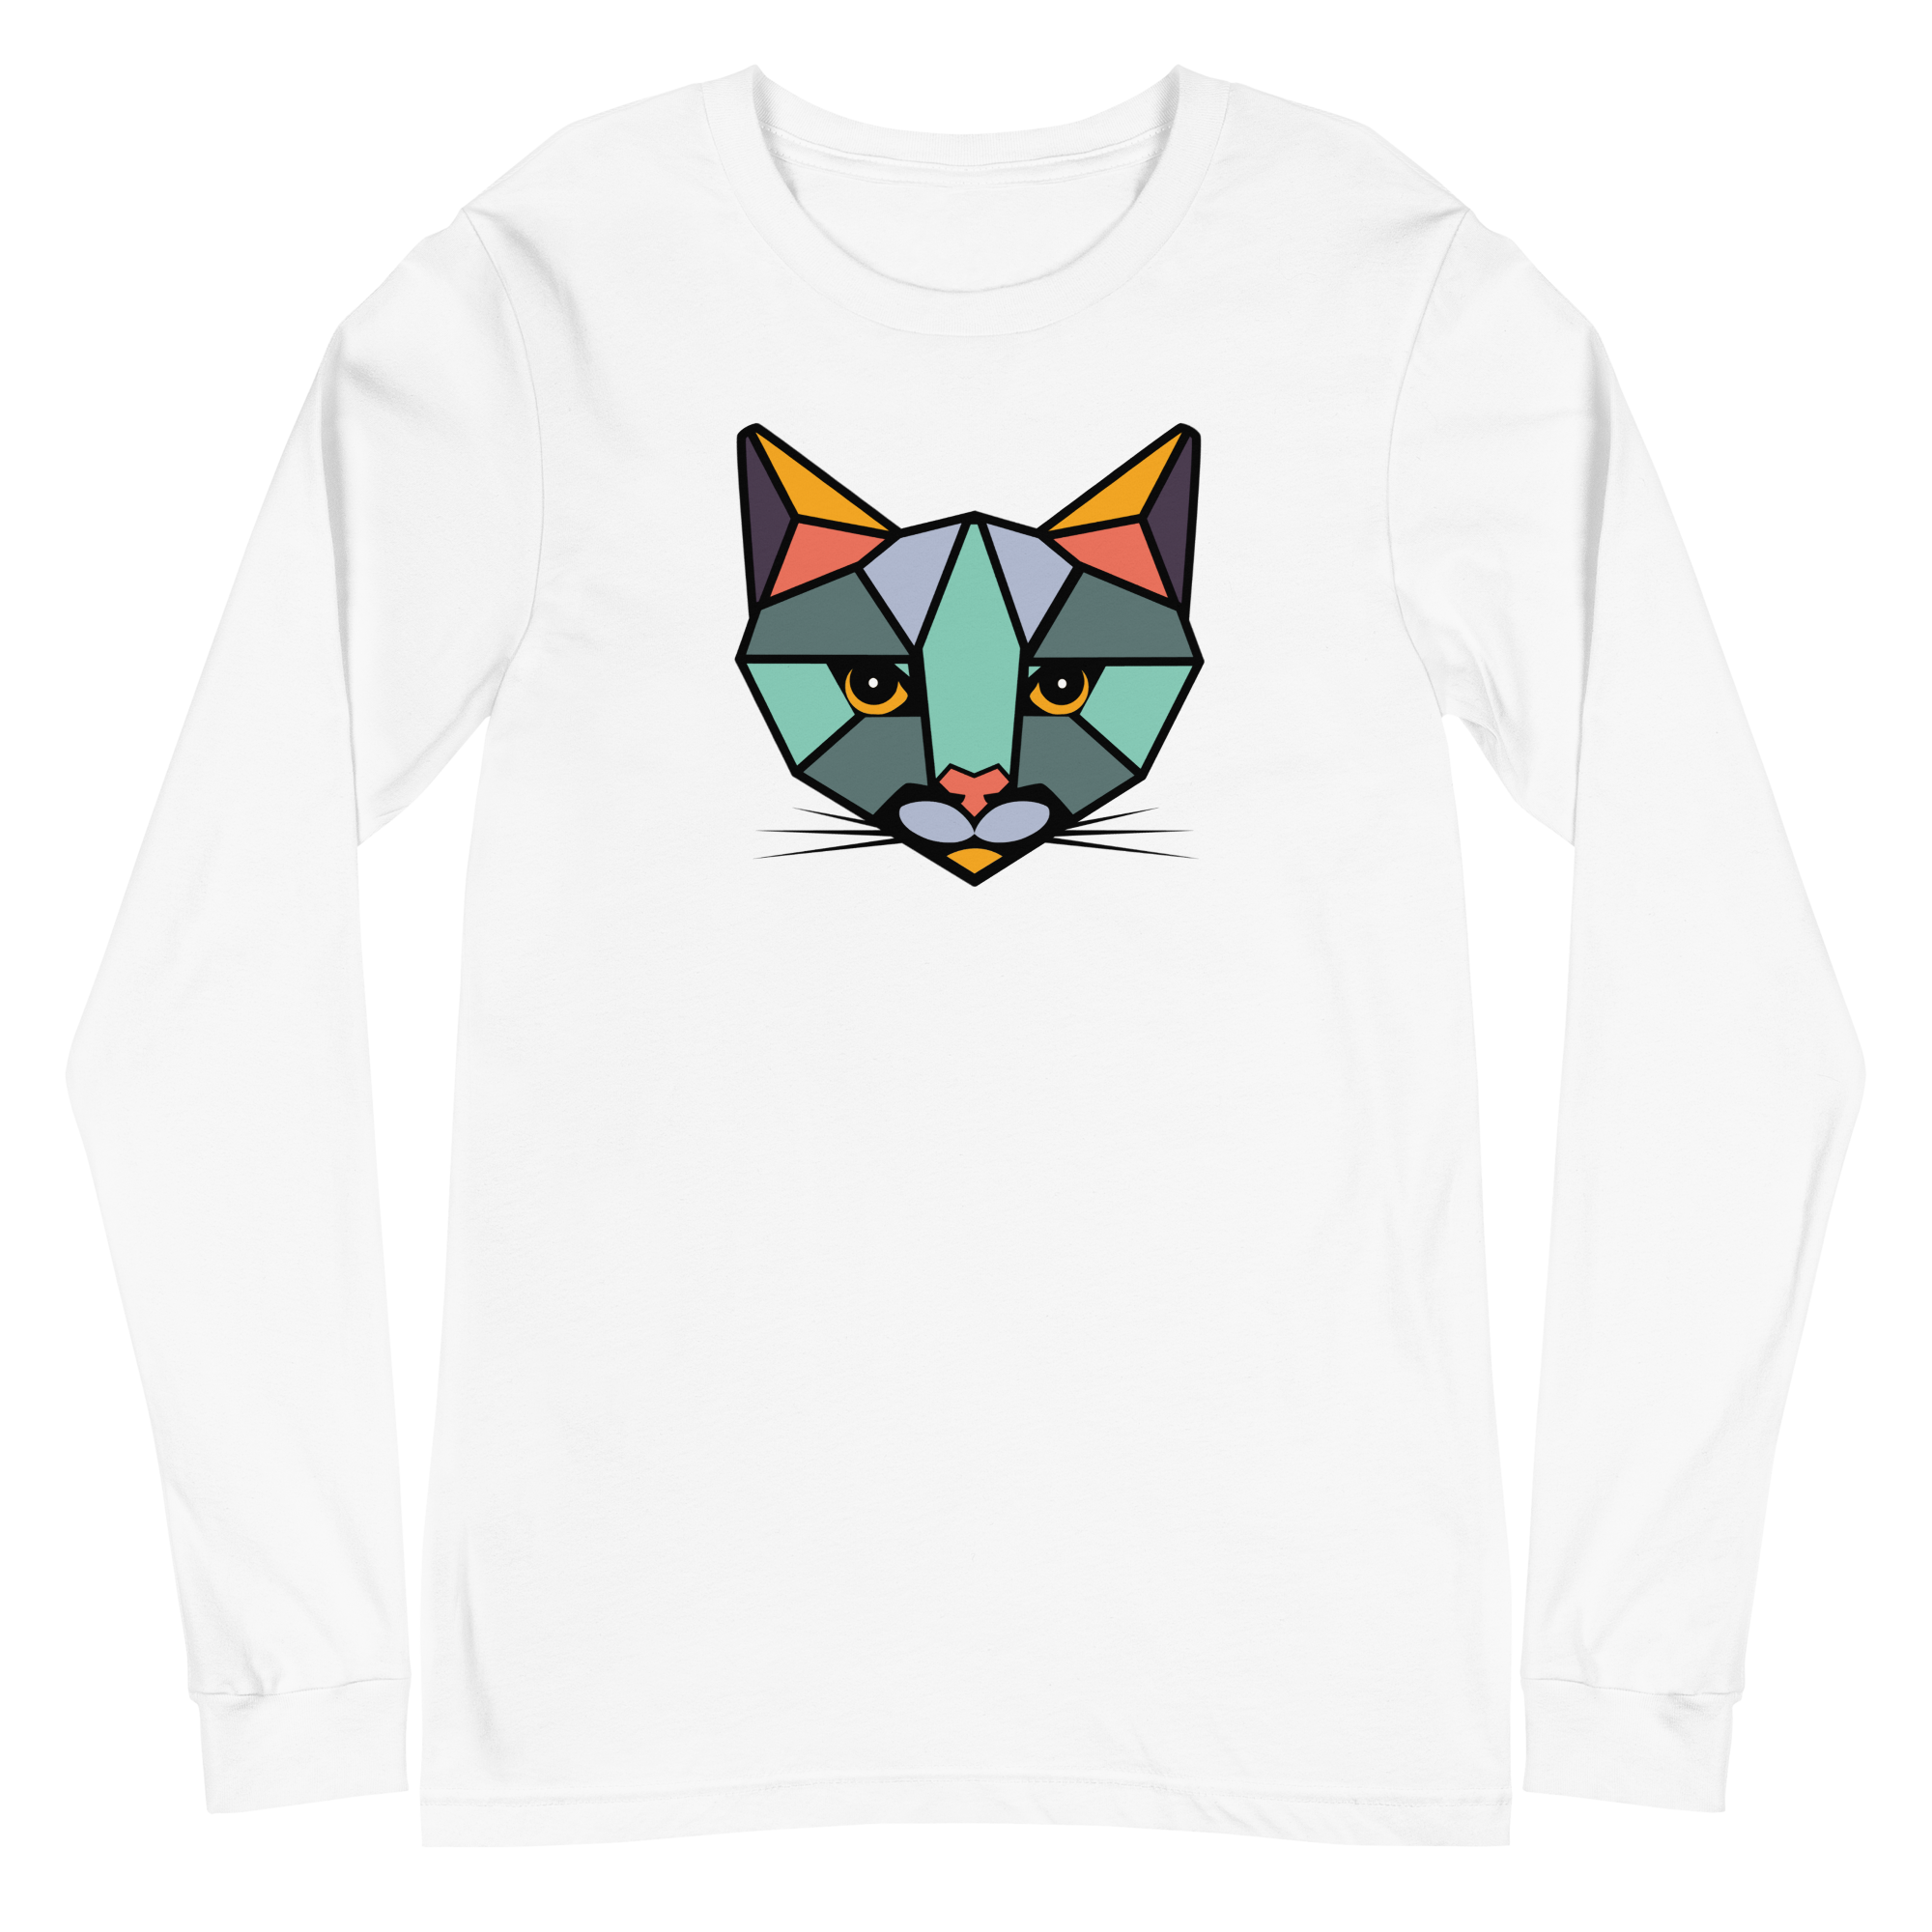 "ROAR CATS" Long Sleeve T-Shirt (Various Colors)